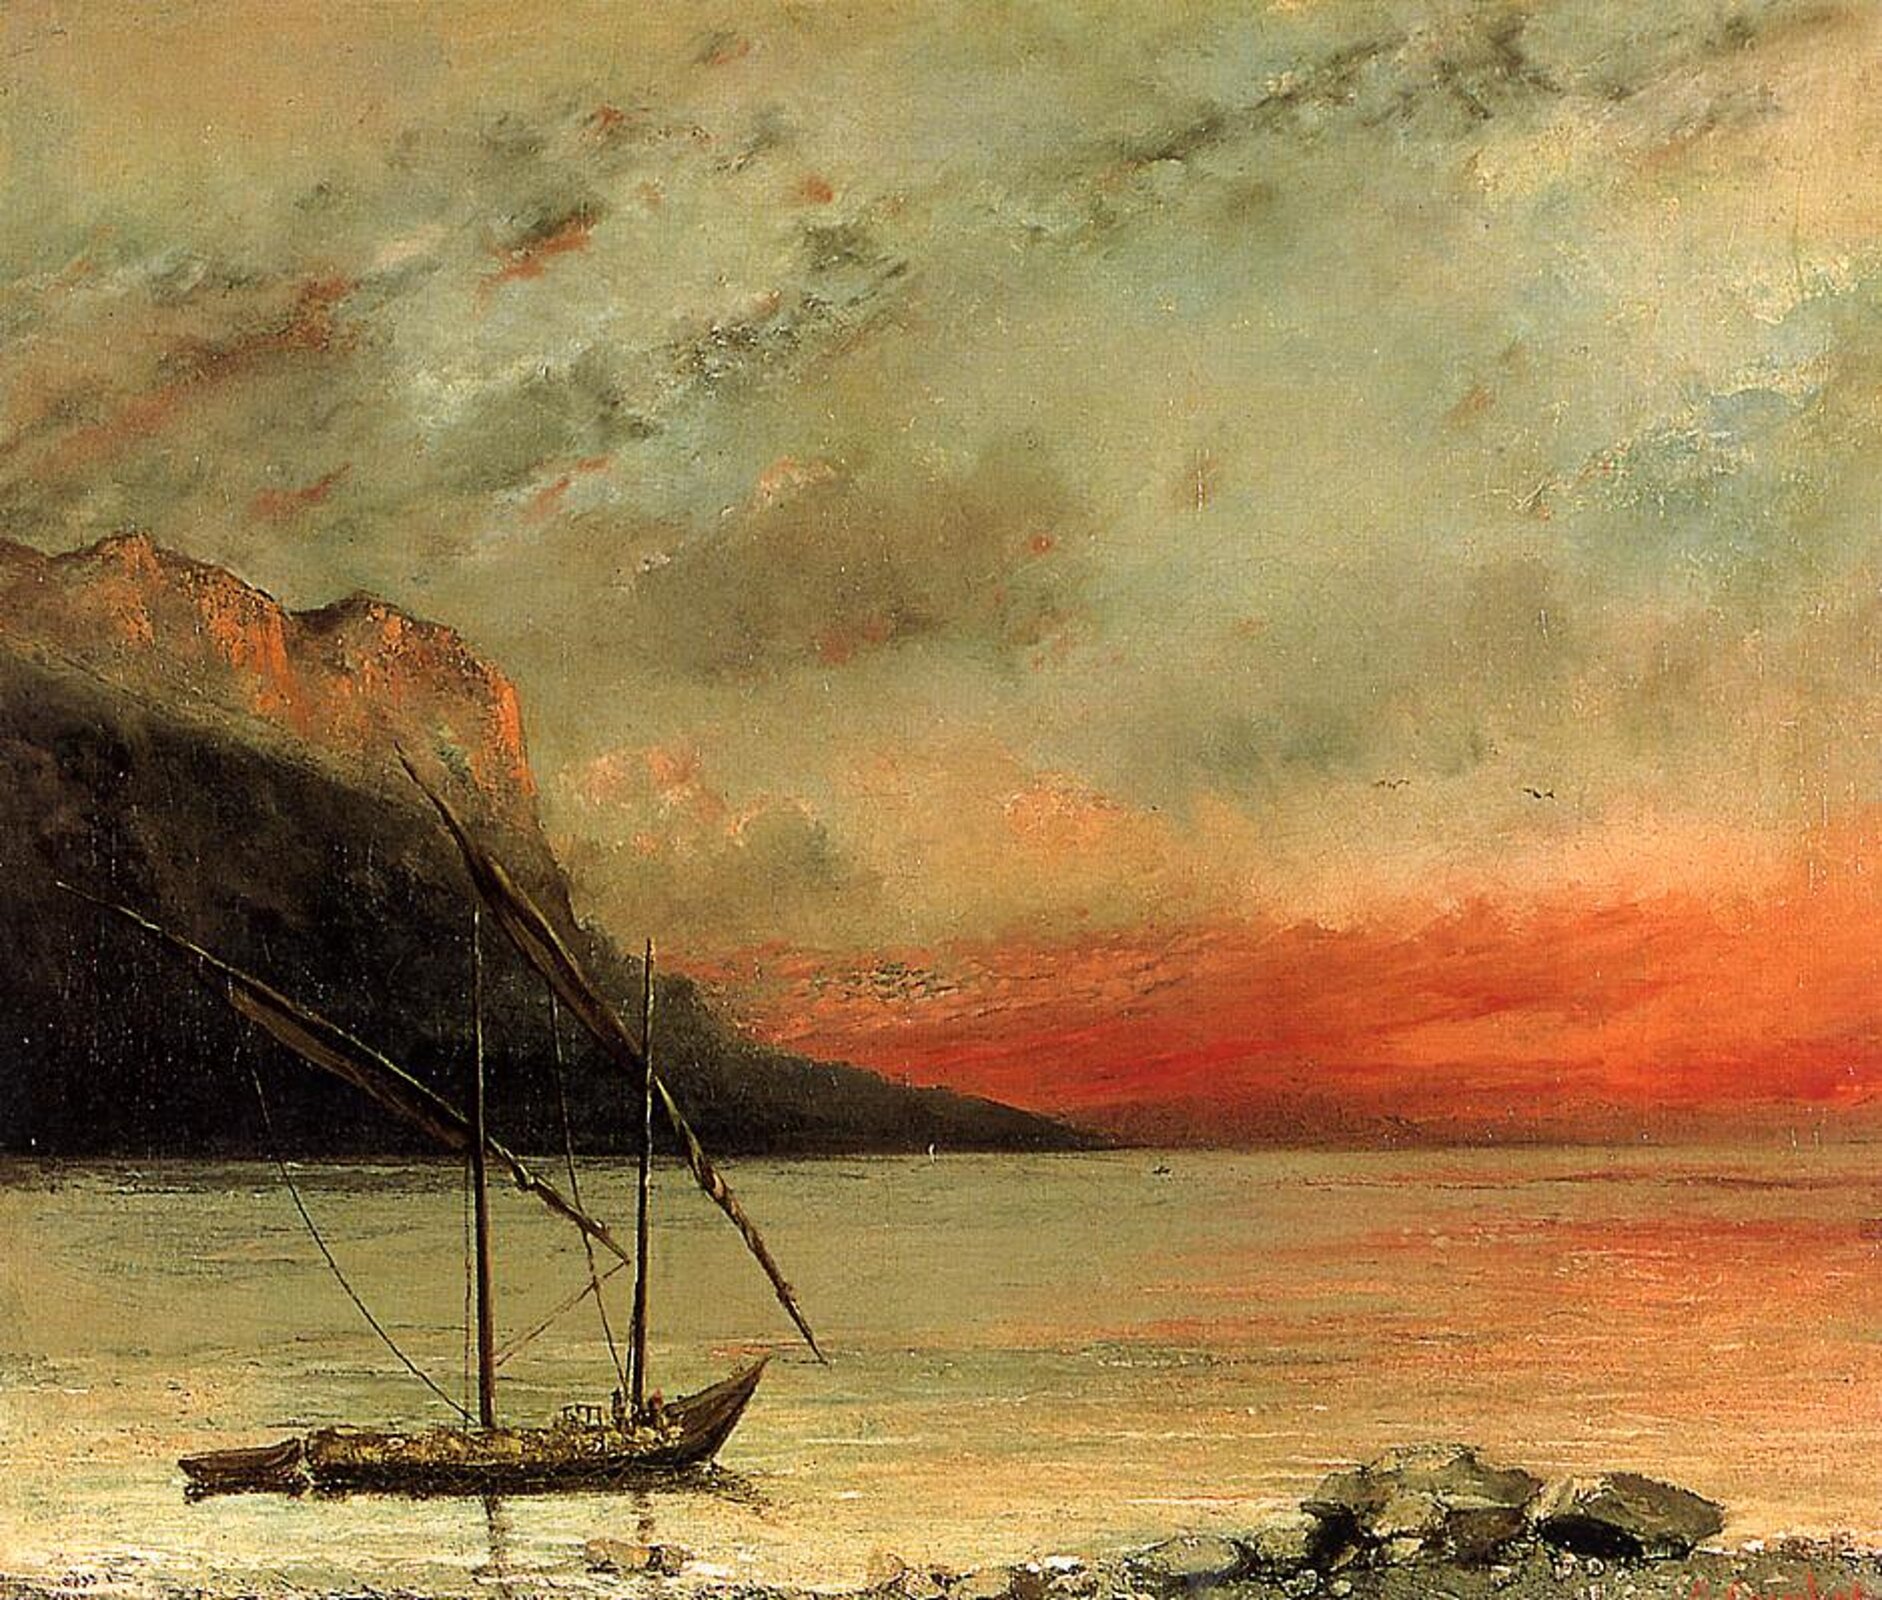 Ilustracja przedstawia obraz Gustave Courbeta pt. „Zachodzące słońce nad jeziorem genewskim”. Na pierwszym planie widać kamienny brzeg w pobliżu którego znajduje się łódź ze zwiniętymi żaglami. Za łodzią, w oddali widać klif na tle szarego nieba. Horyzont rozświetlony przez zachodzące słońce przybiera purpurowe odcienie.